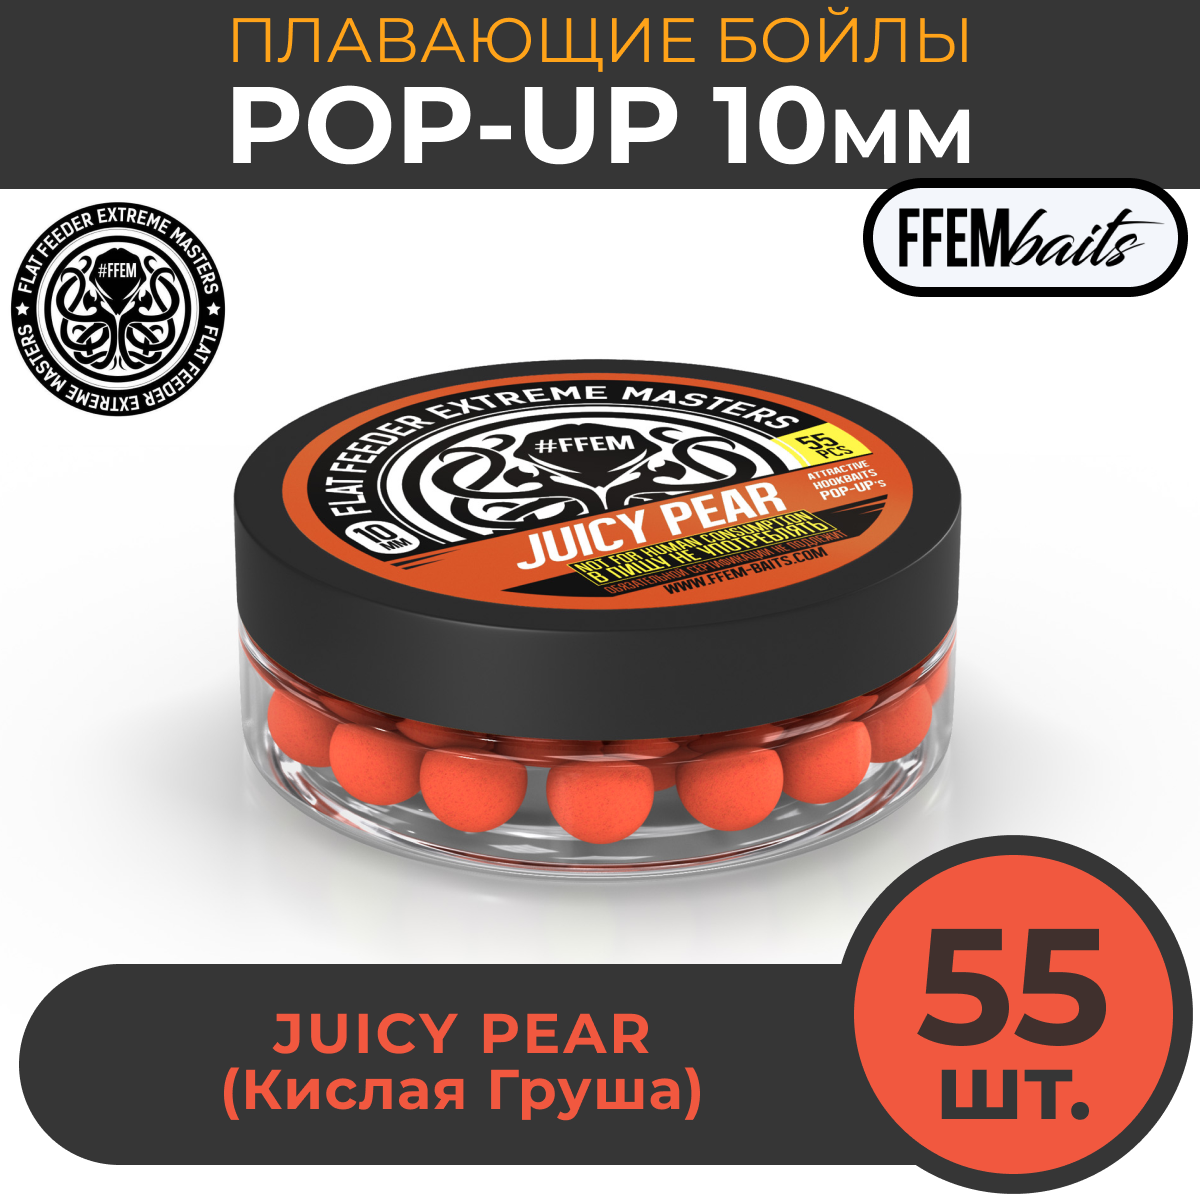 Плавающие бойлы FFEM POP-UP JUICY PEAR 10мм, Сочная Груша, 50мл (55 штук), оранжевый / плавающие насадочные / поп-ап / поп-апы / плавающий бойл / дамбеллсы / дамбелс